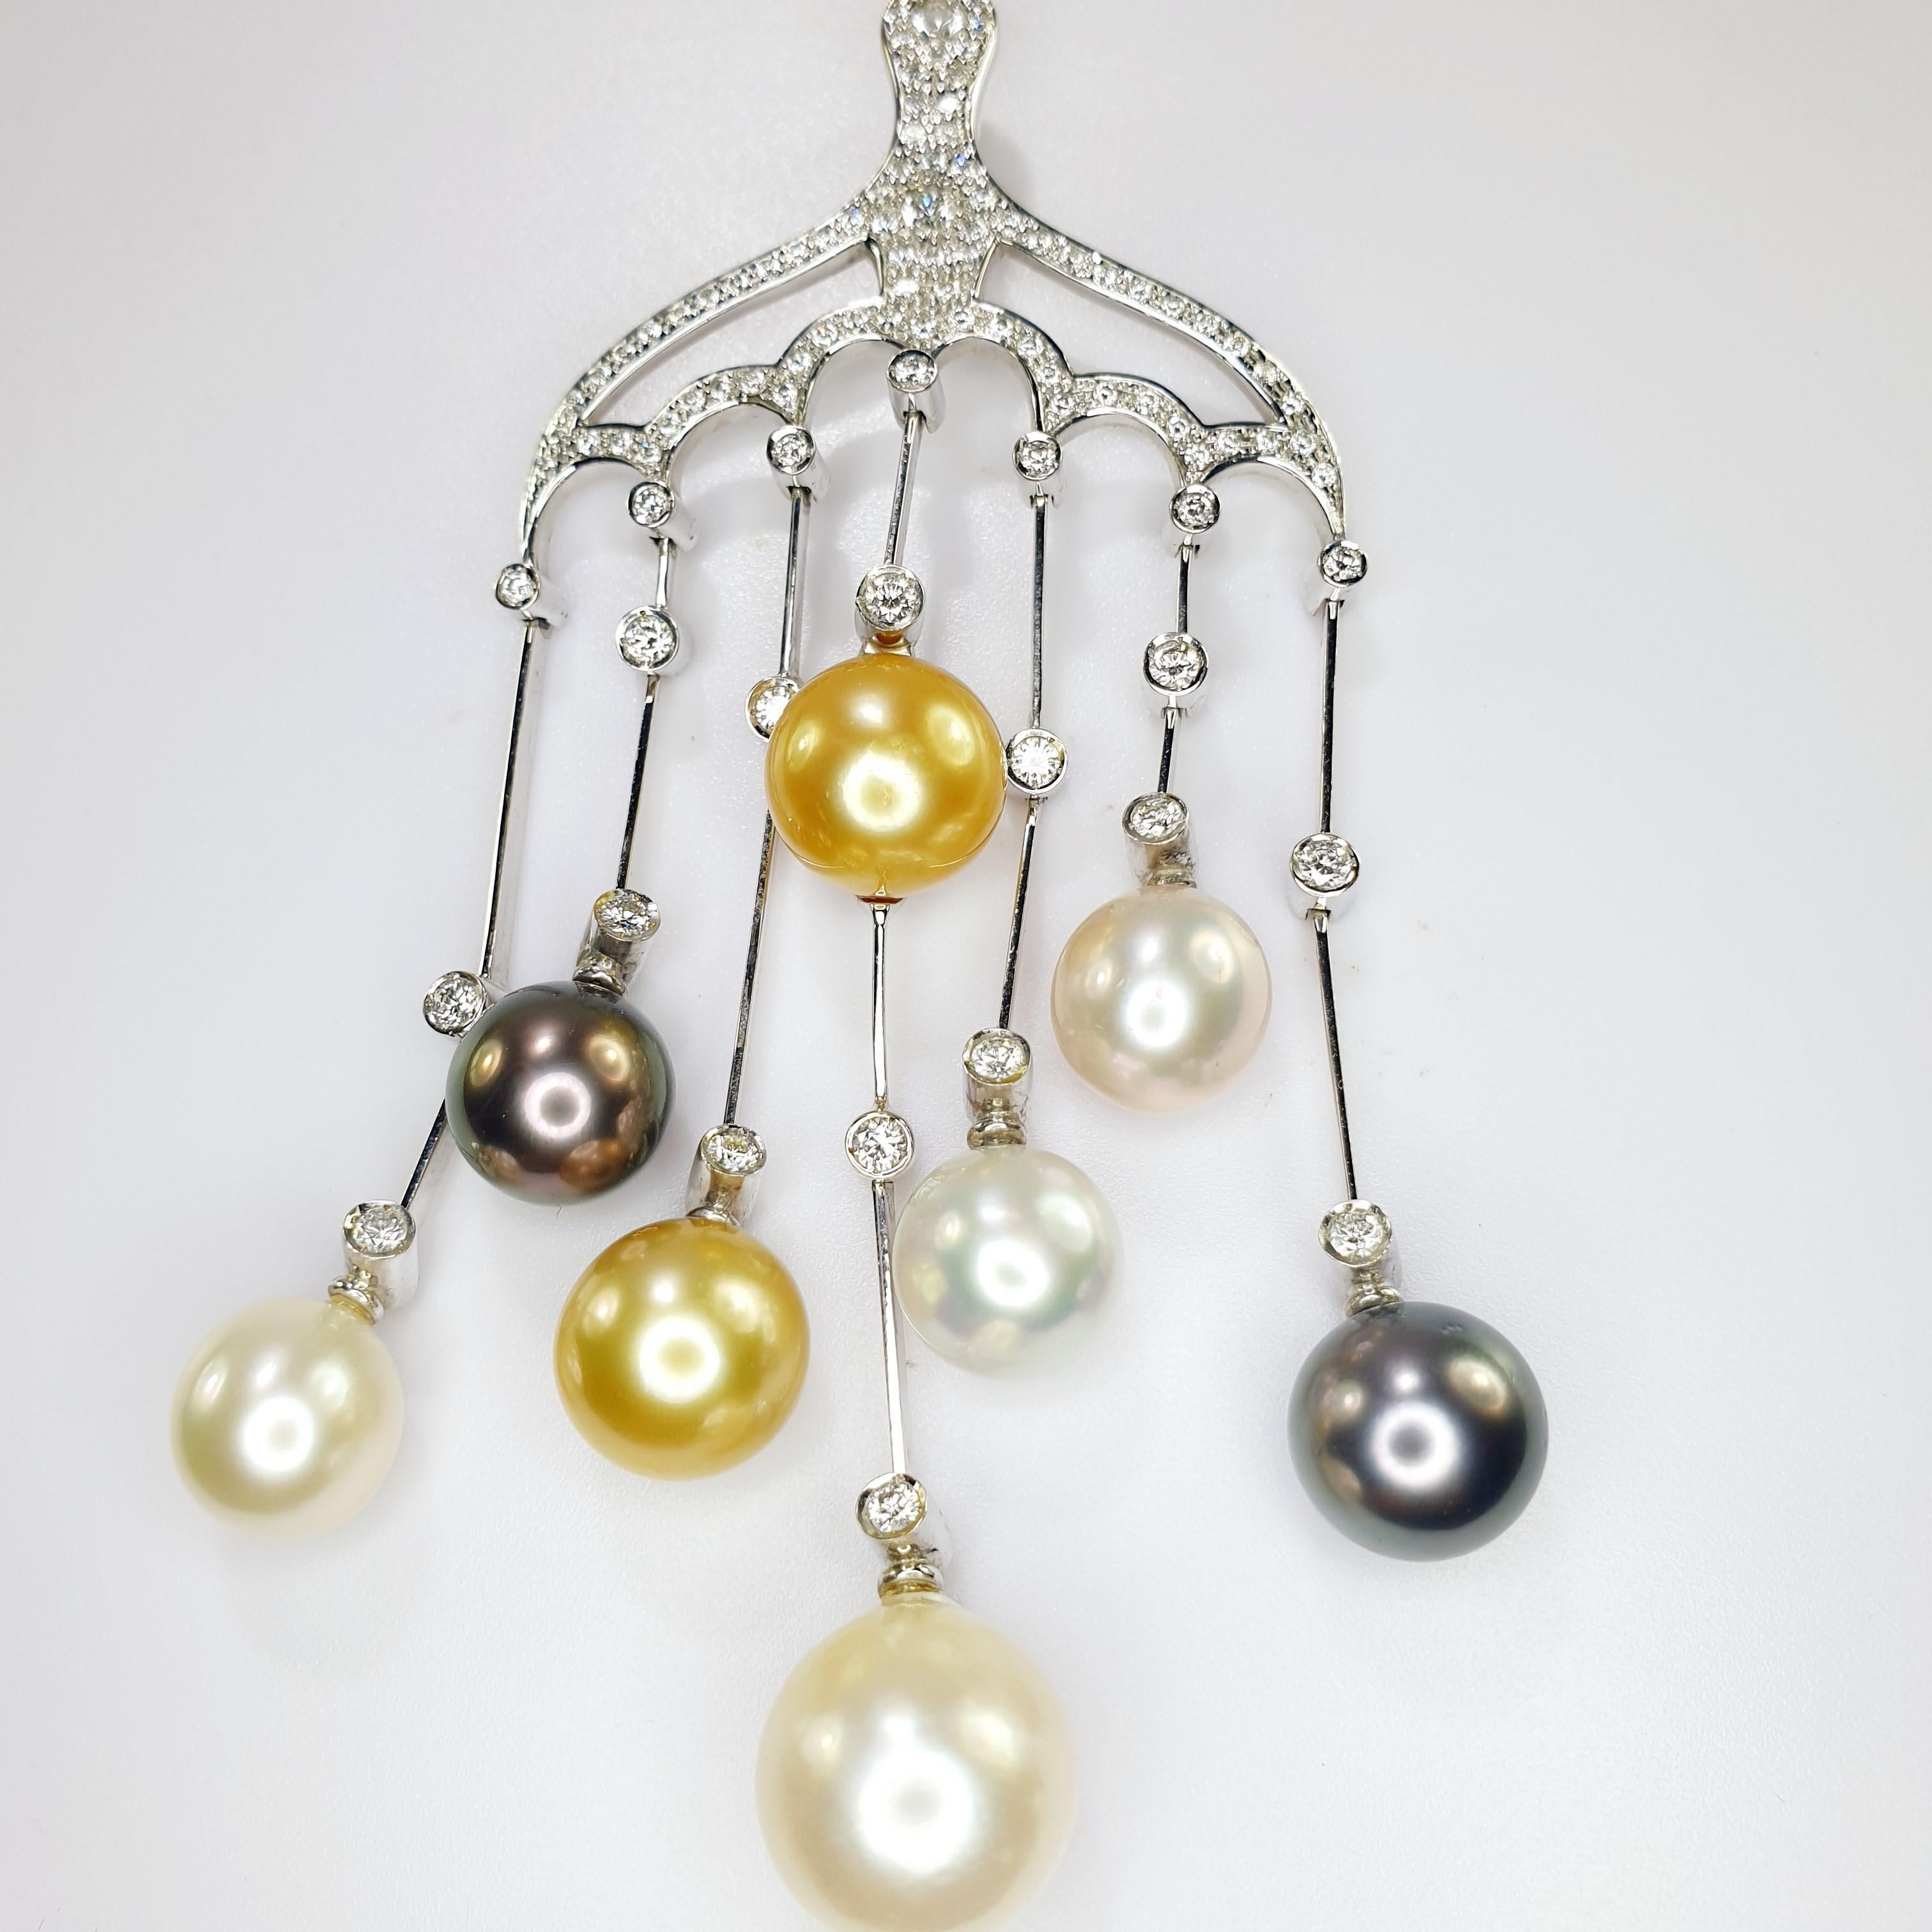 Magnifique pendentif en perles de culture multicolores en or blanc 18kt et diamants dans une variation de mesures de 
9mm à 11mm, Tahiti, or, rose, et blanc 
pavé de diamants totalisant 0,25ct,  24 diamants individuels sertis pesant de 0,09 à 0,15ct